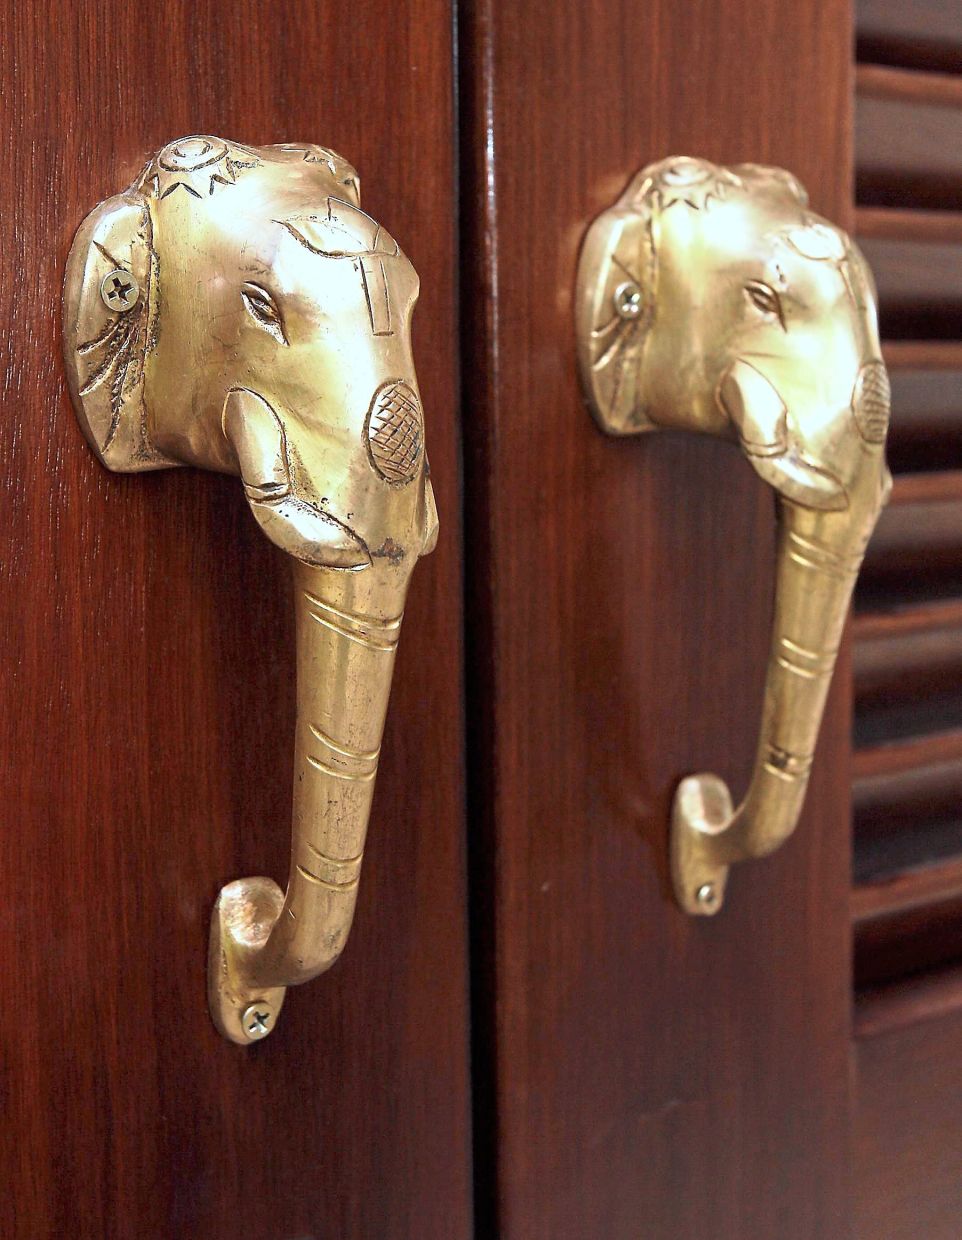 Statement cabinet door handles. — Filepic